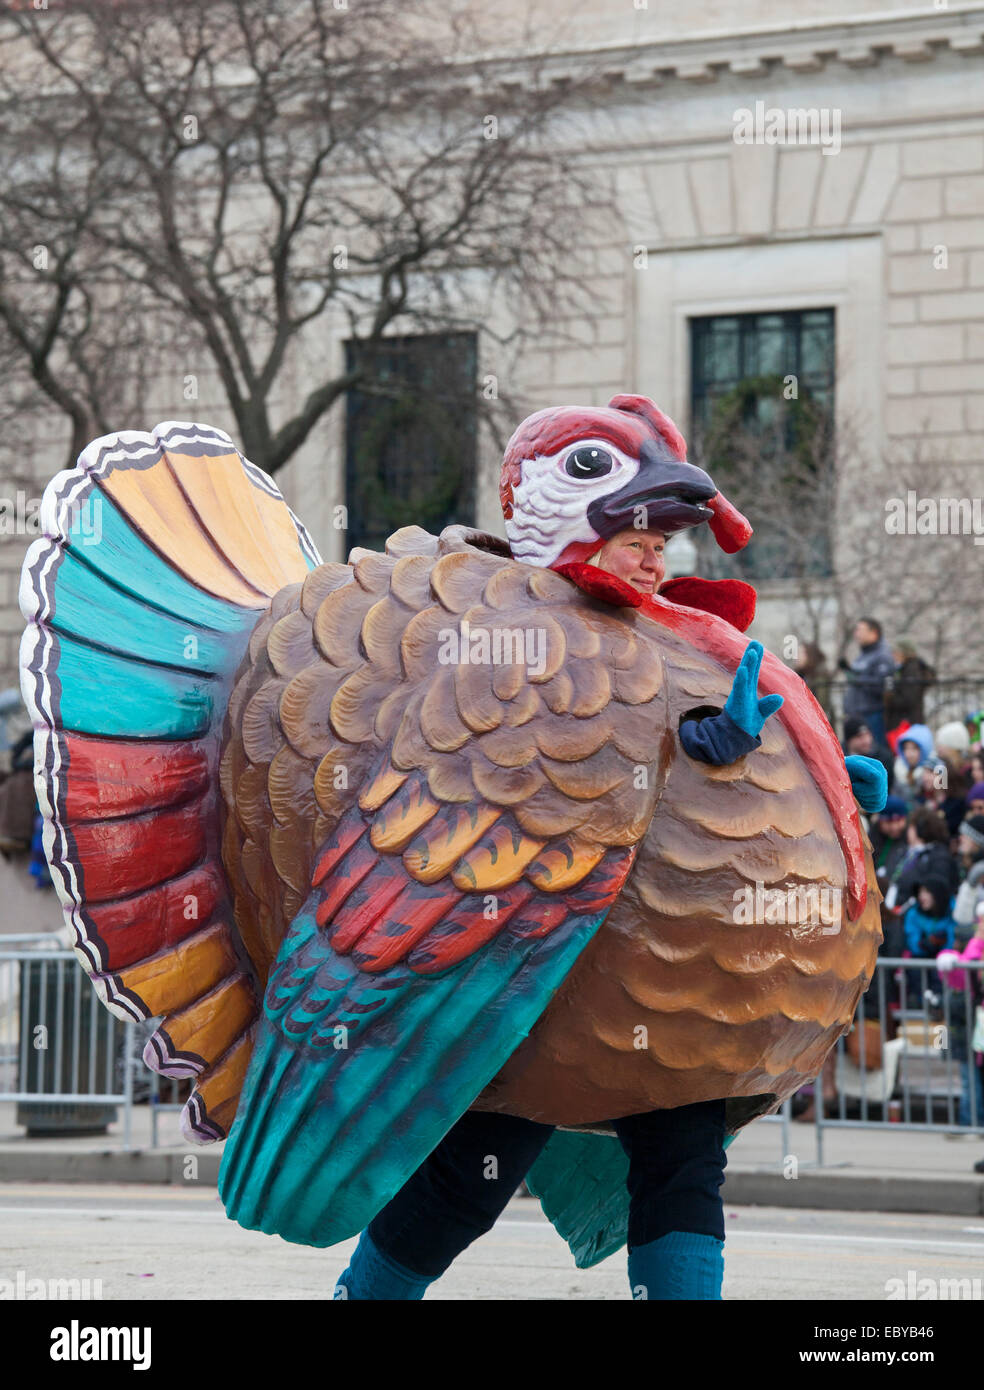 Detroit per il giorno del Ringraziamento Parade, ufficialmente chiamato America's Thanksgiving Parade. Foto Stock